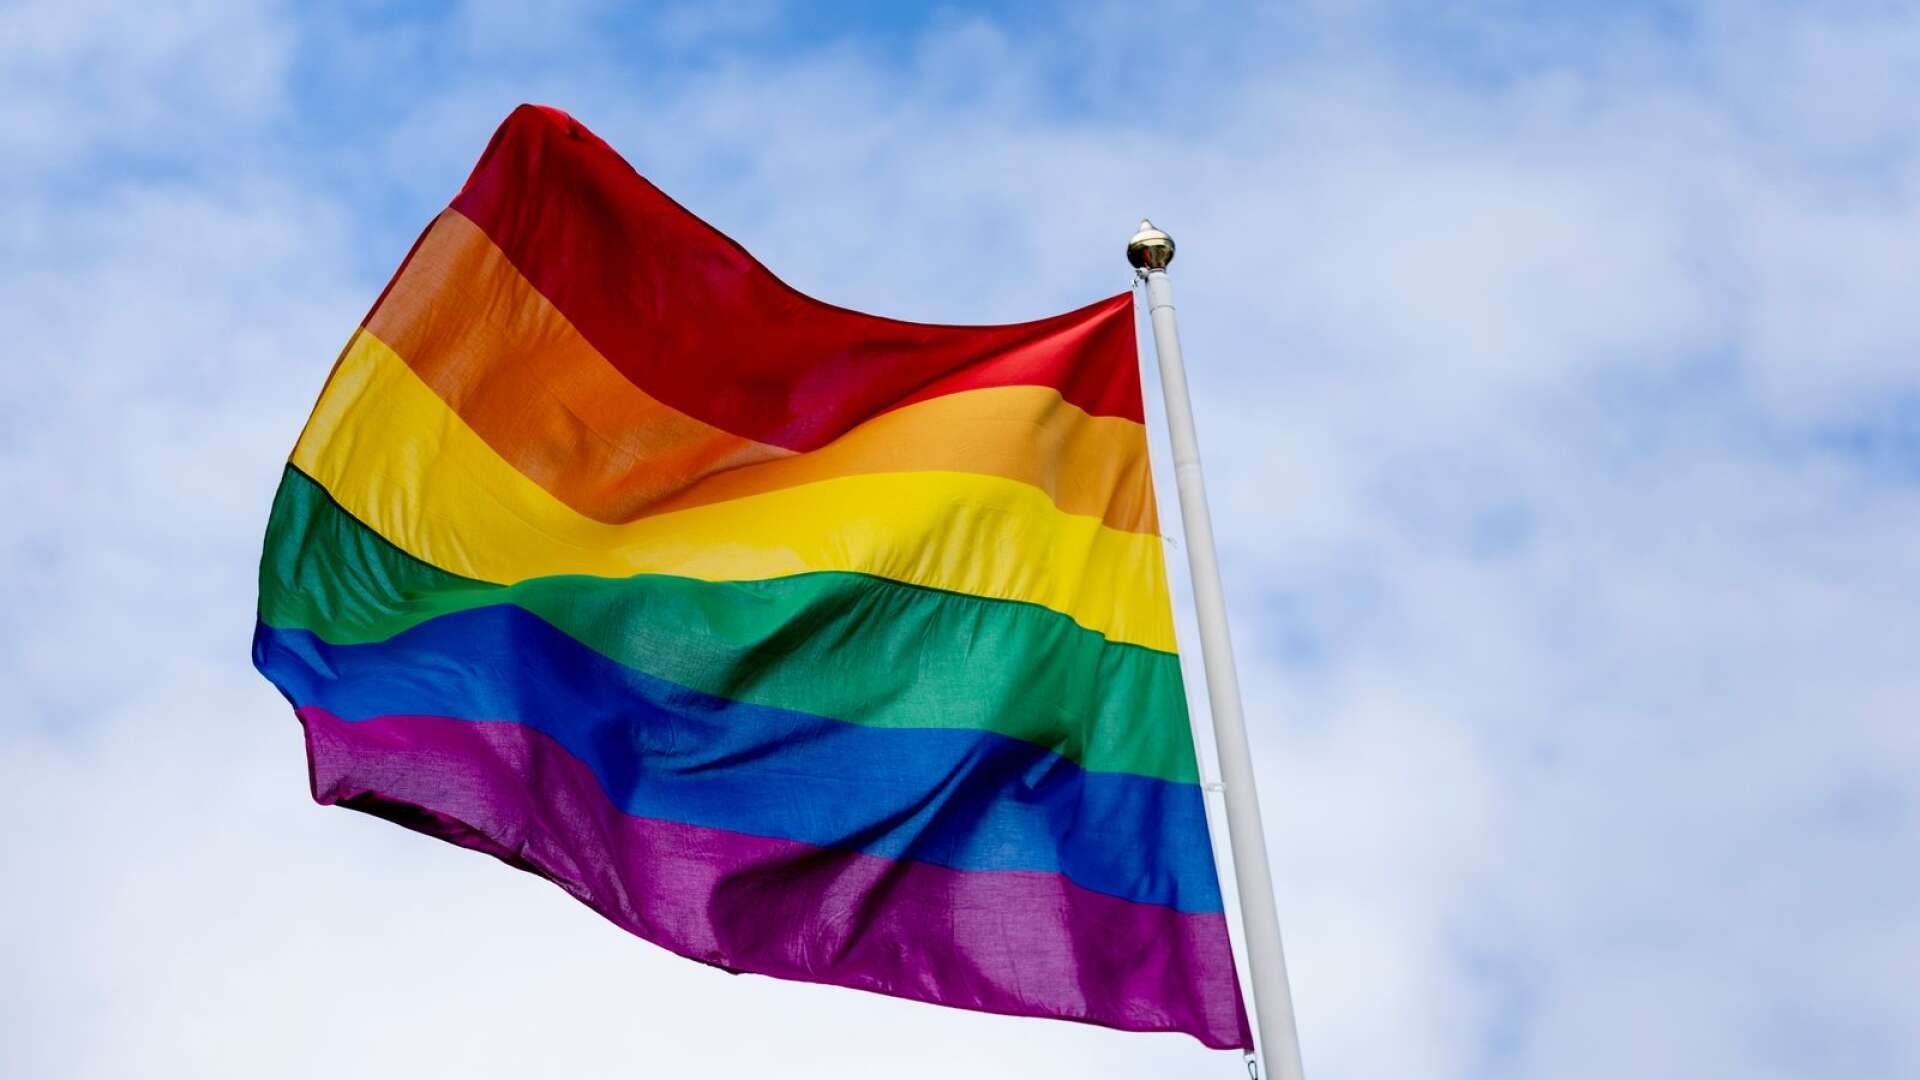 Förslaget att Sunne kommun ska hissa Prideflaggan i samband med Wermland Pride vållade debatt i kommunstyrelsen.